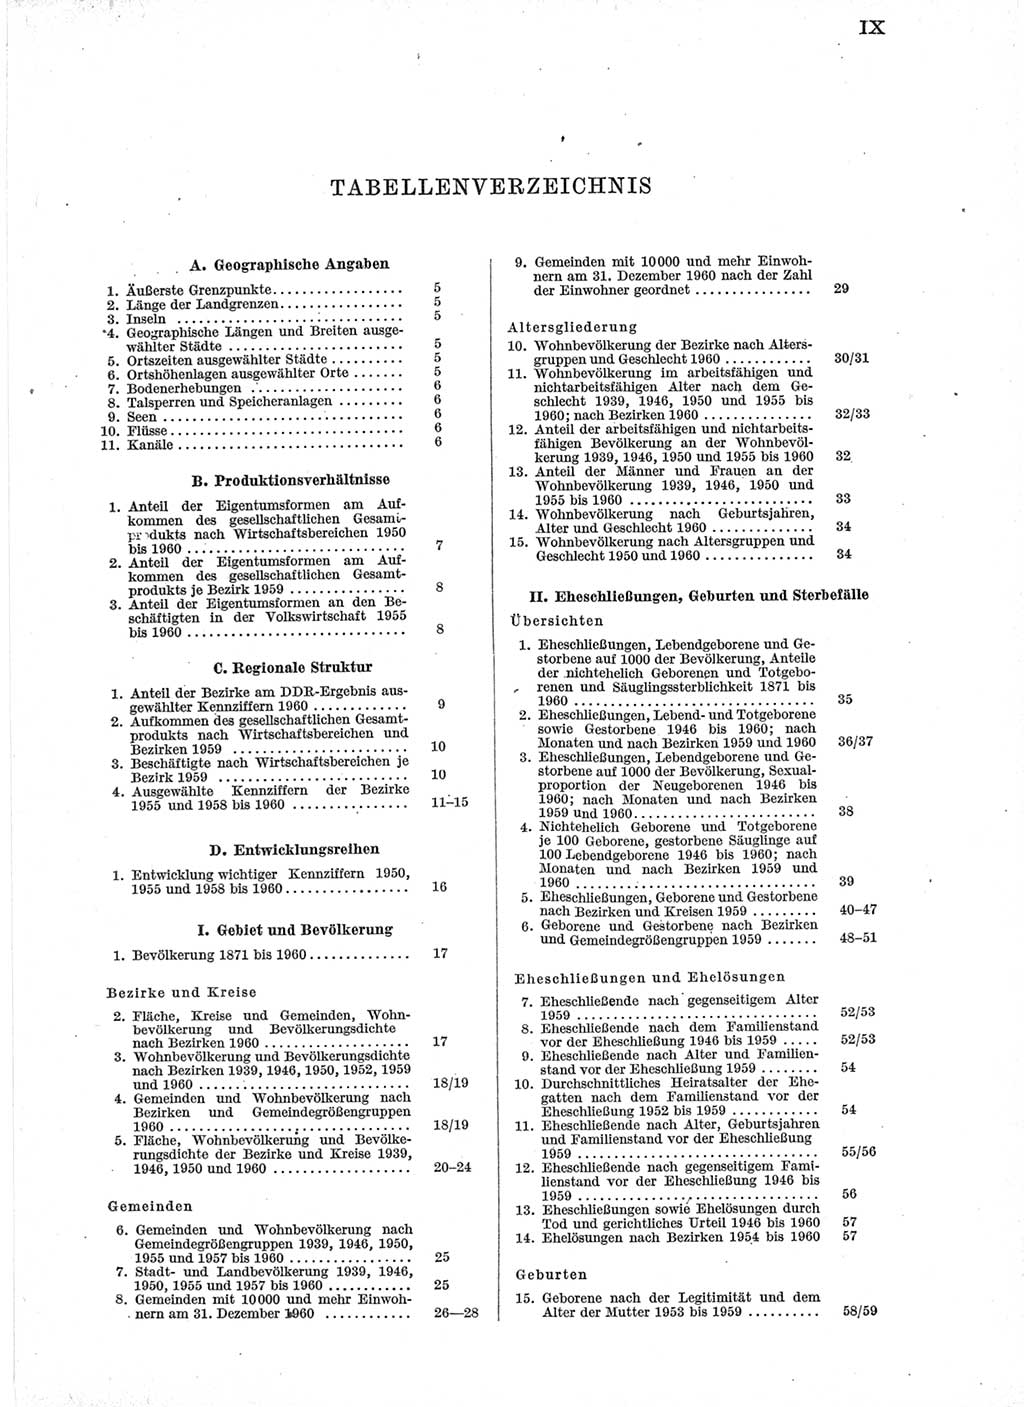 Statistisches Jahrbuch der Deutschen Demokratischen Republik (DDR) 1960-1961, Seite 9 (Stat. Jb. DDR 1960-1961, S. 9)